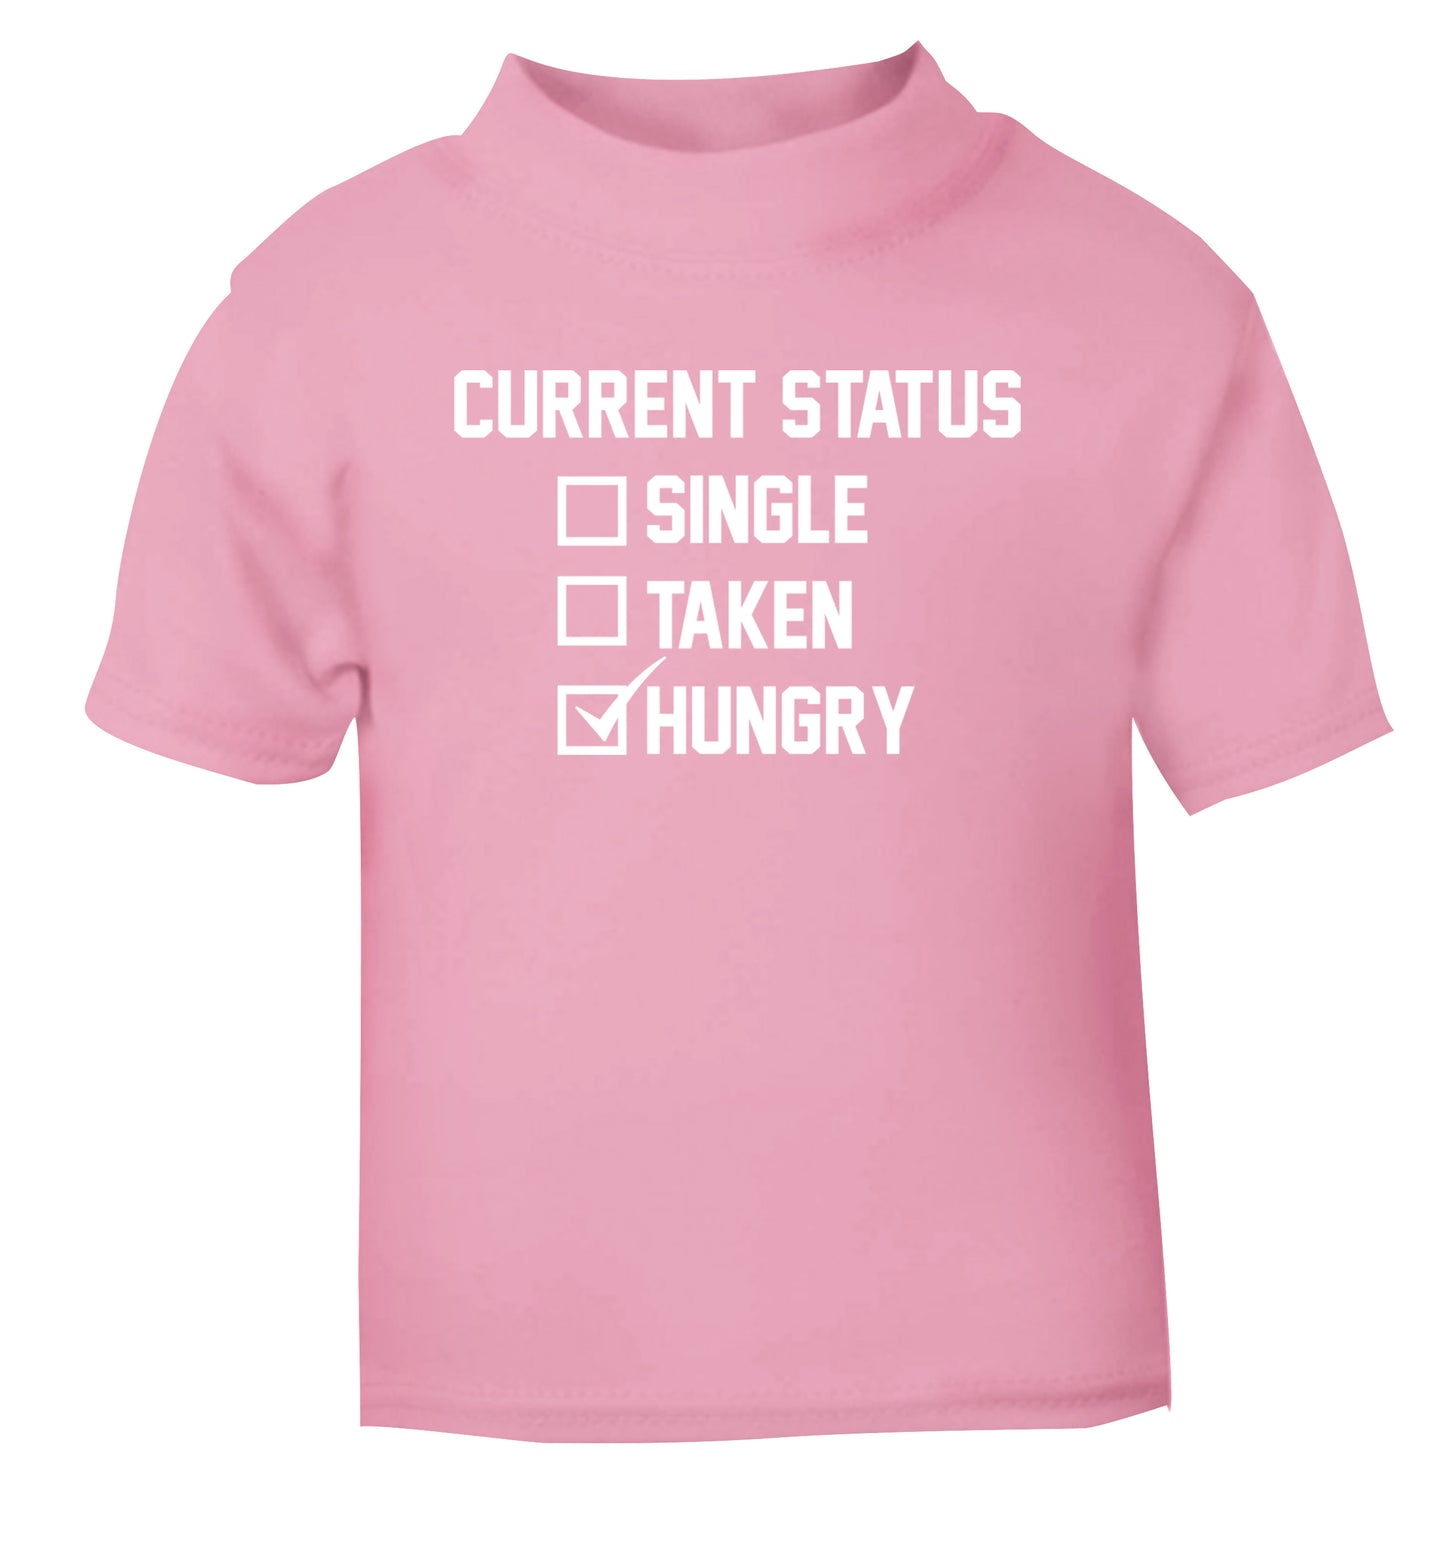 Relationship status single taken hungry light pink Baby Toddler Tshirt 2 Years